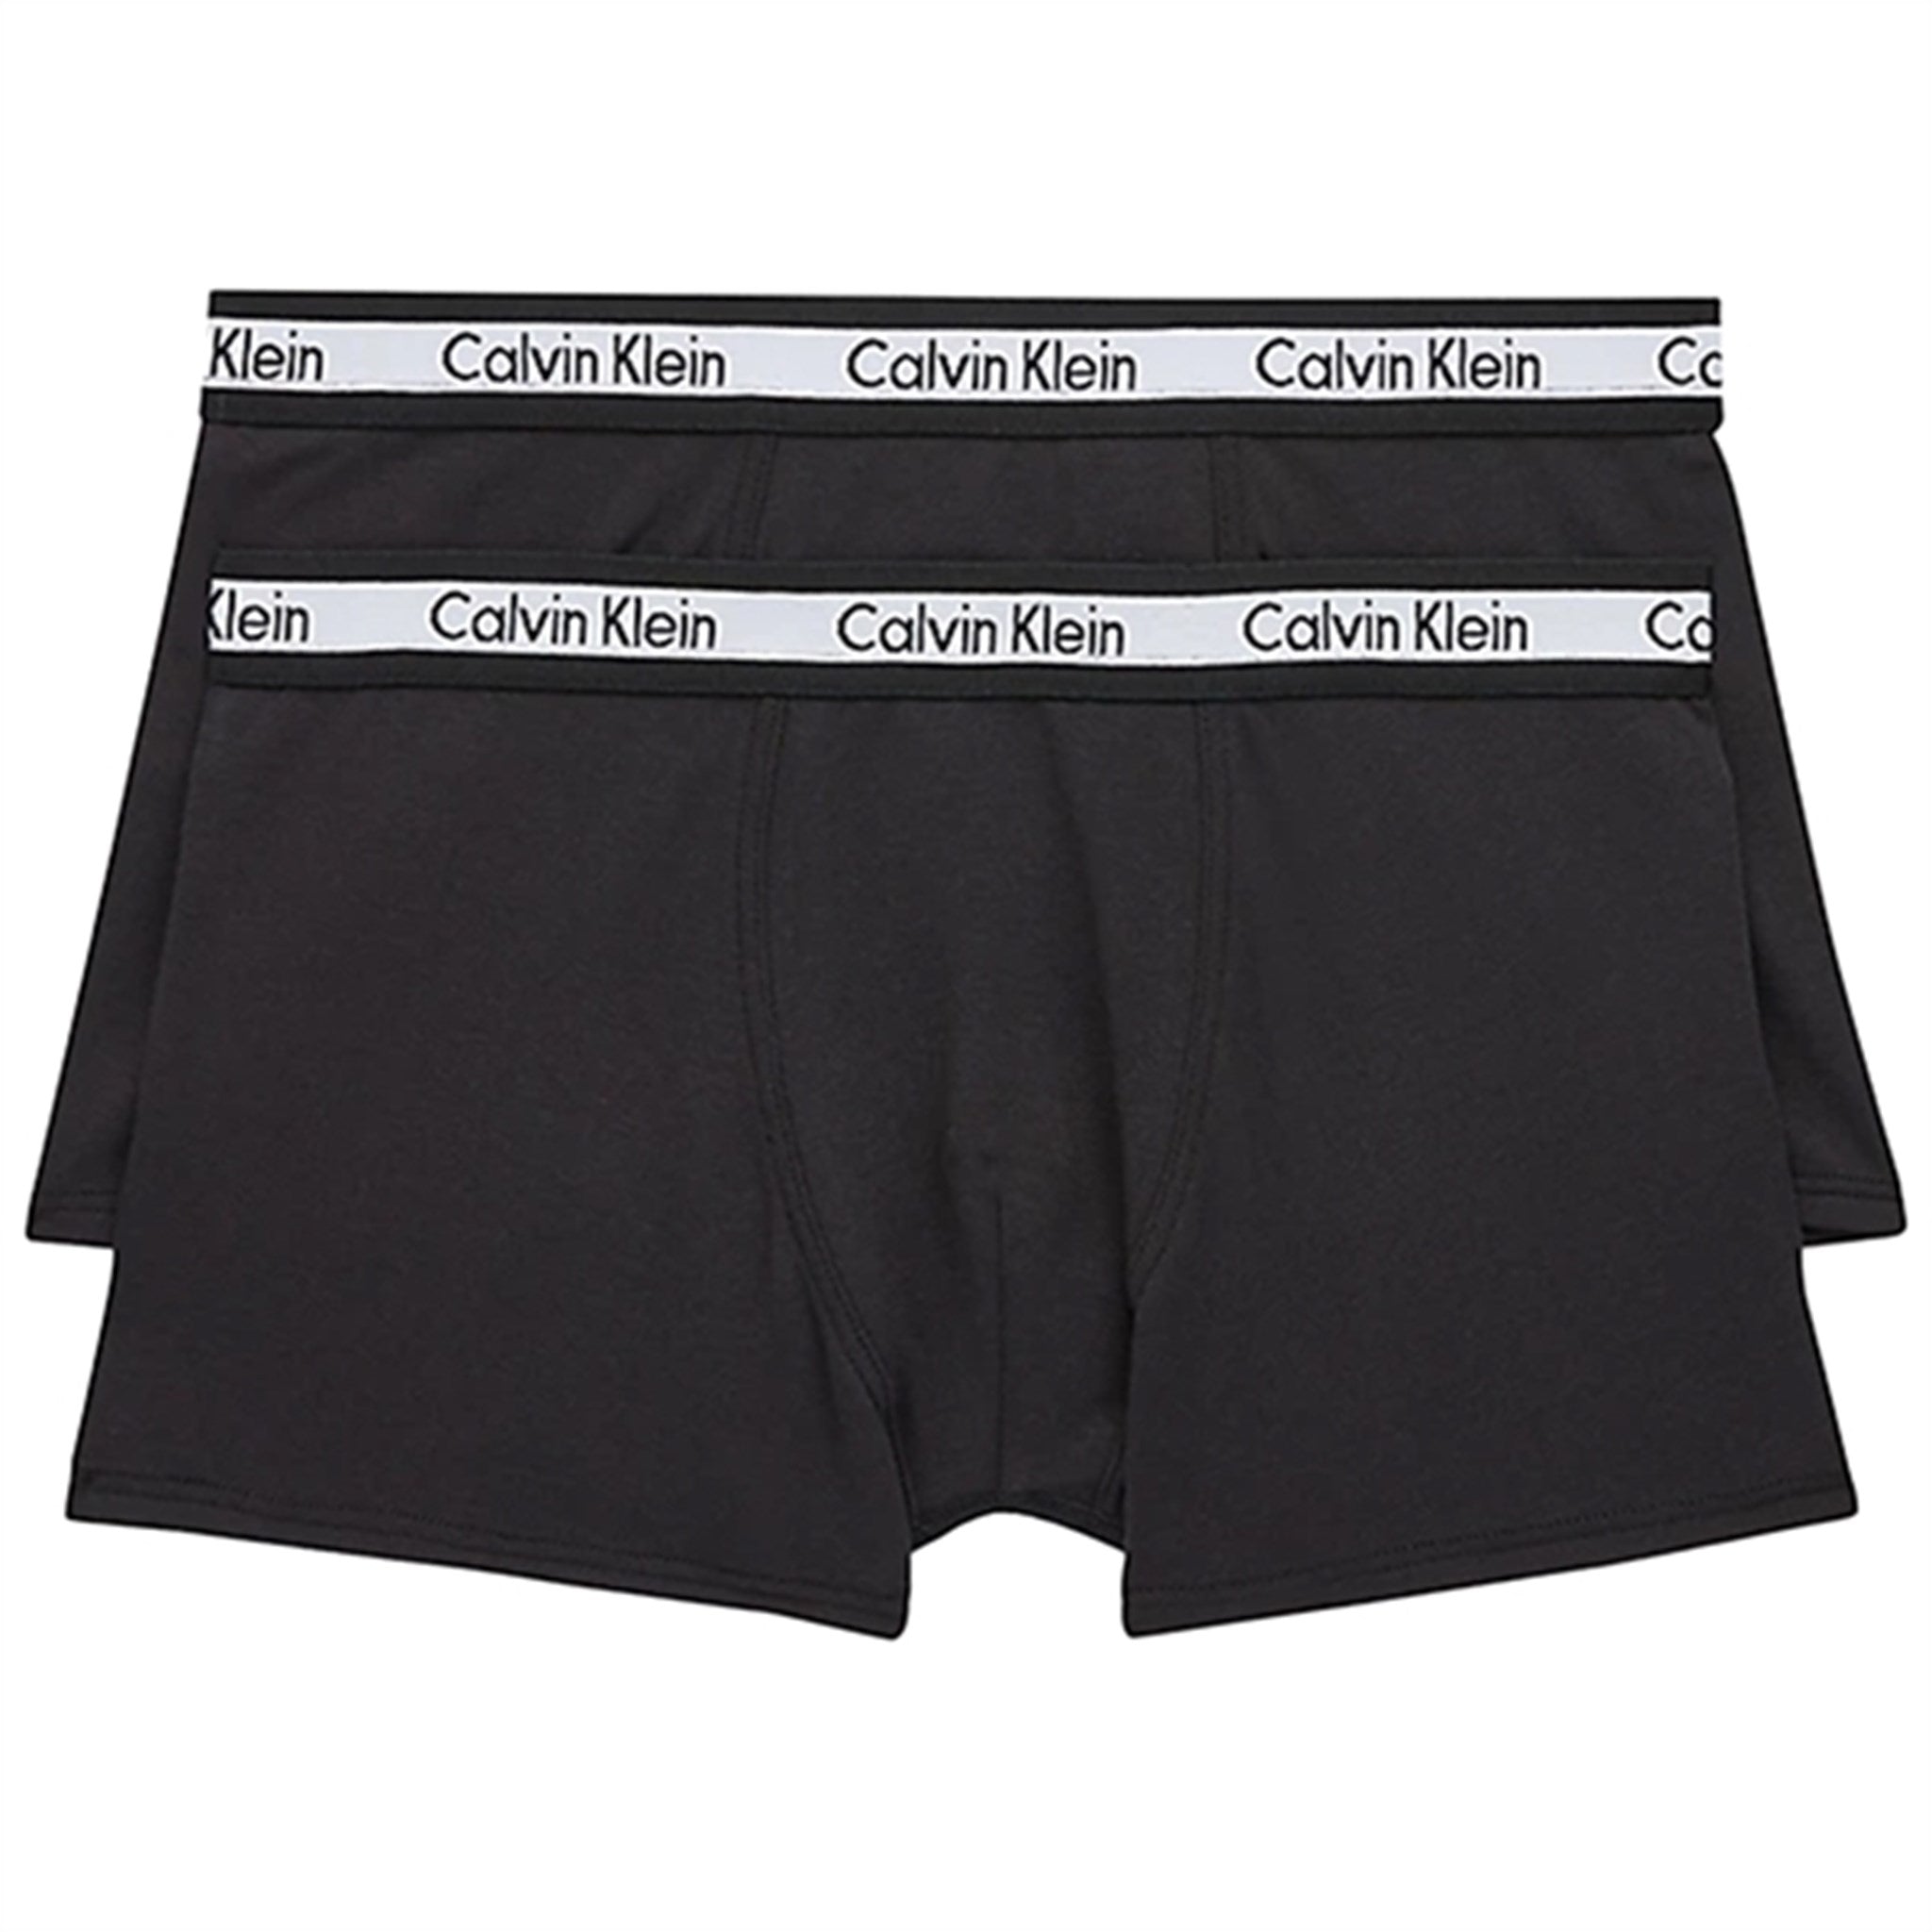 Calvin Klein Boxershorts 2-Pak Black